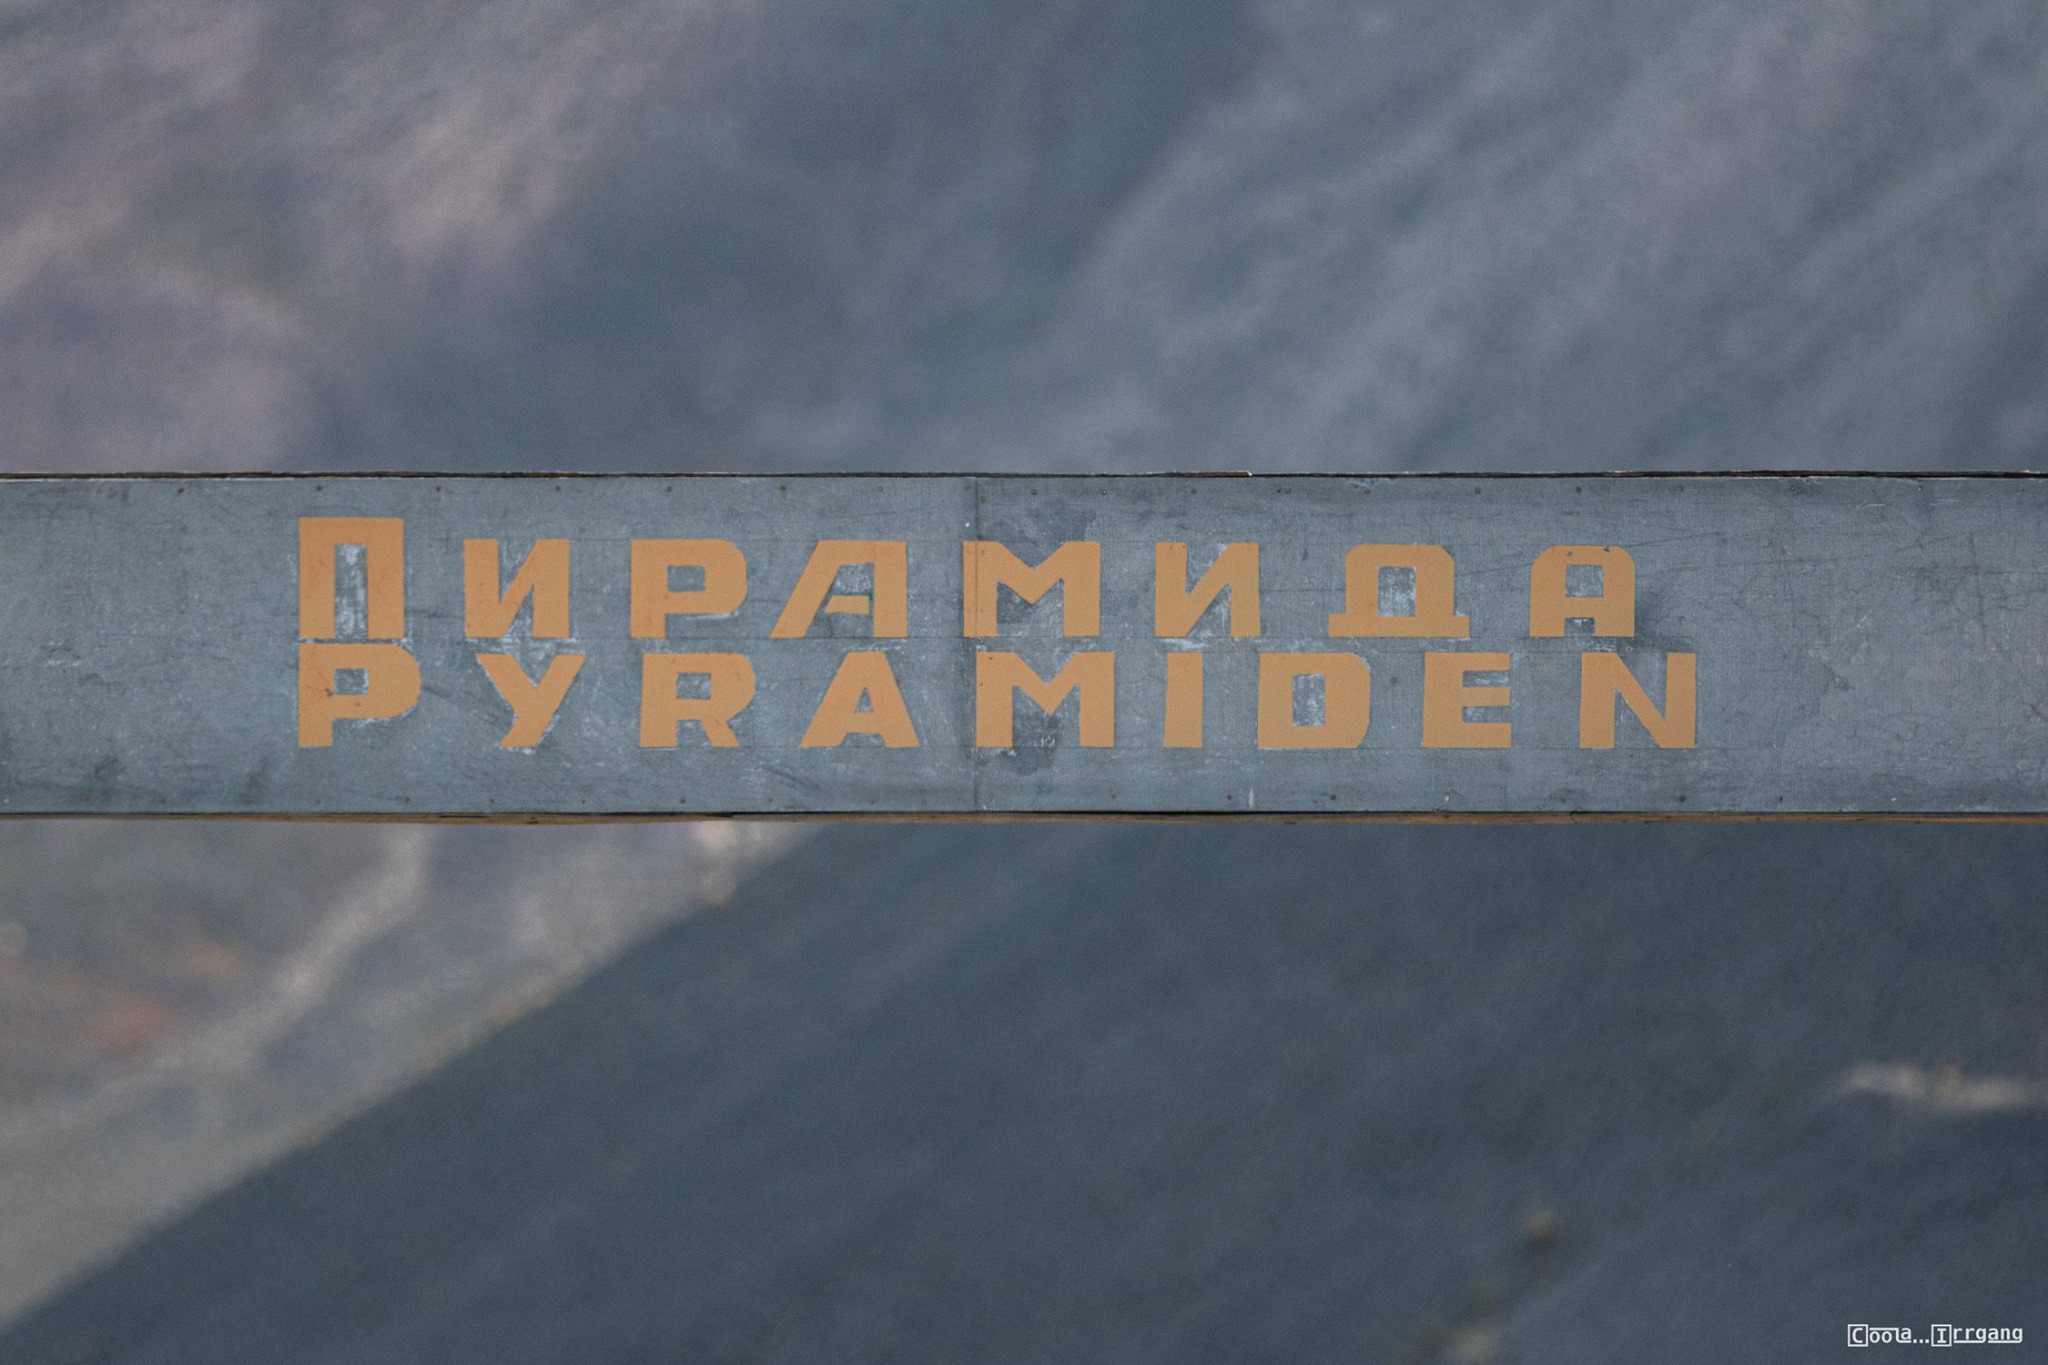 Pyramiden_Spitzbergen